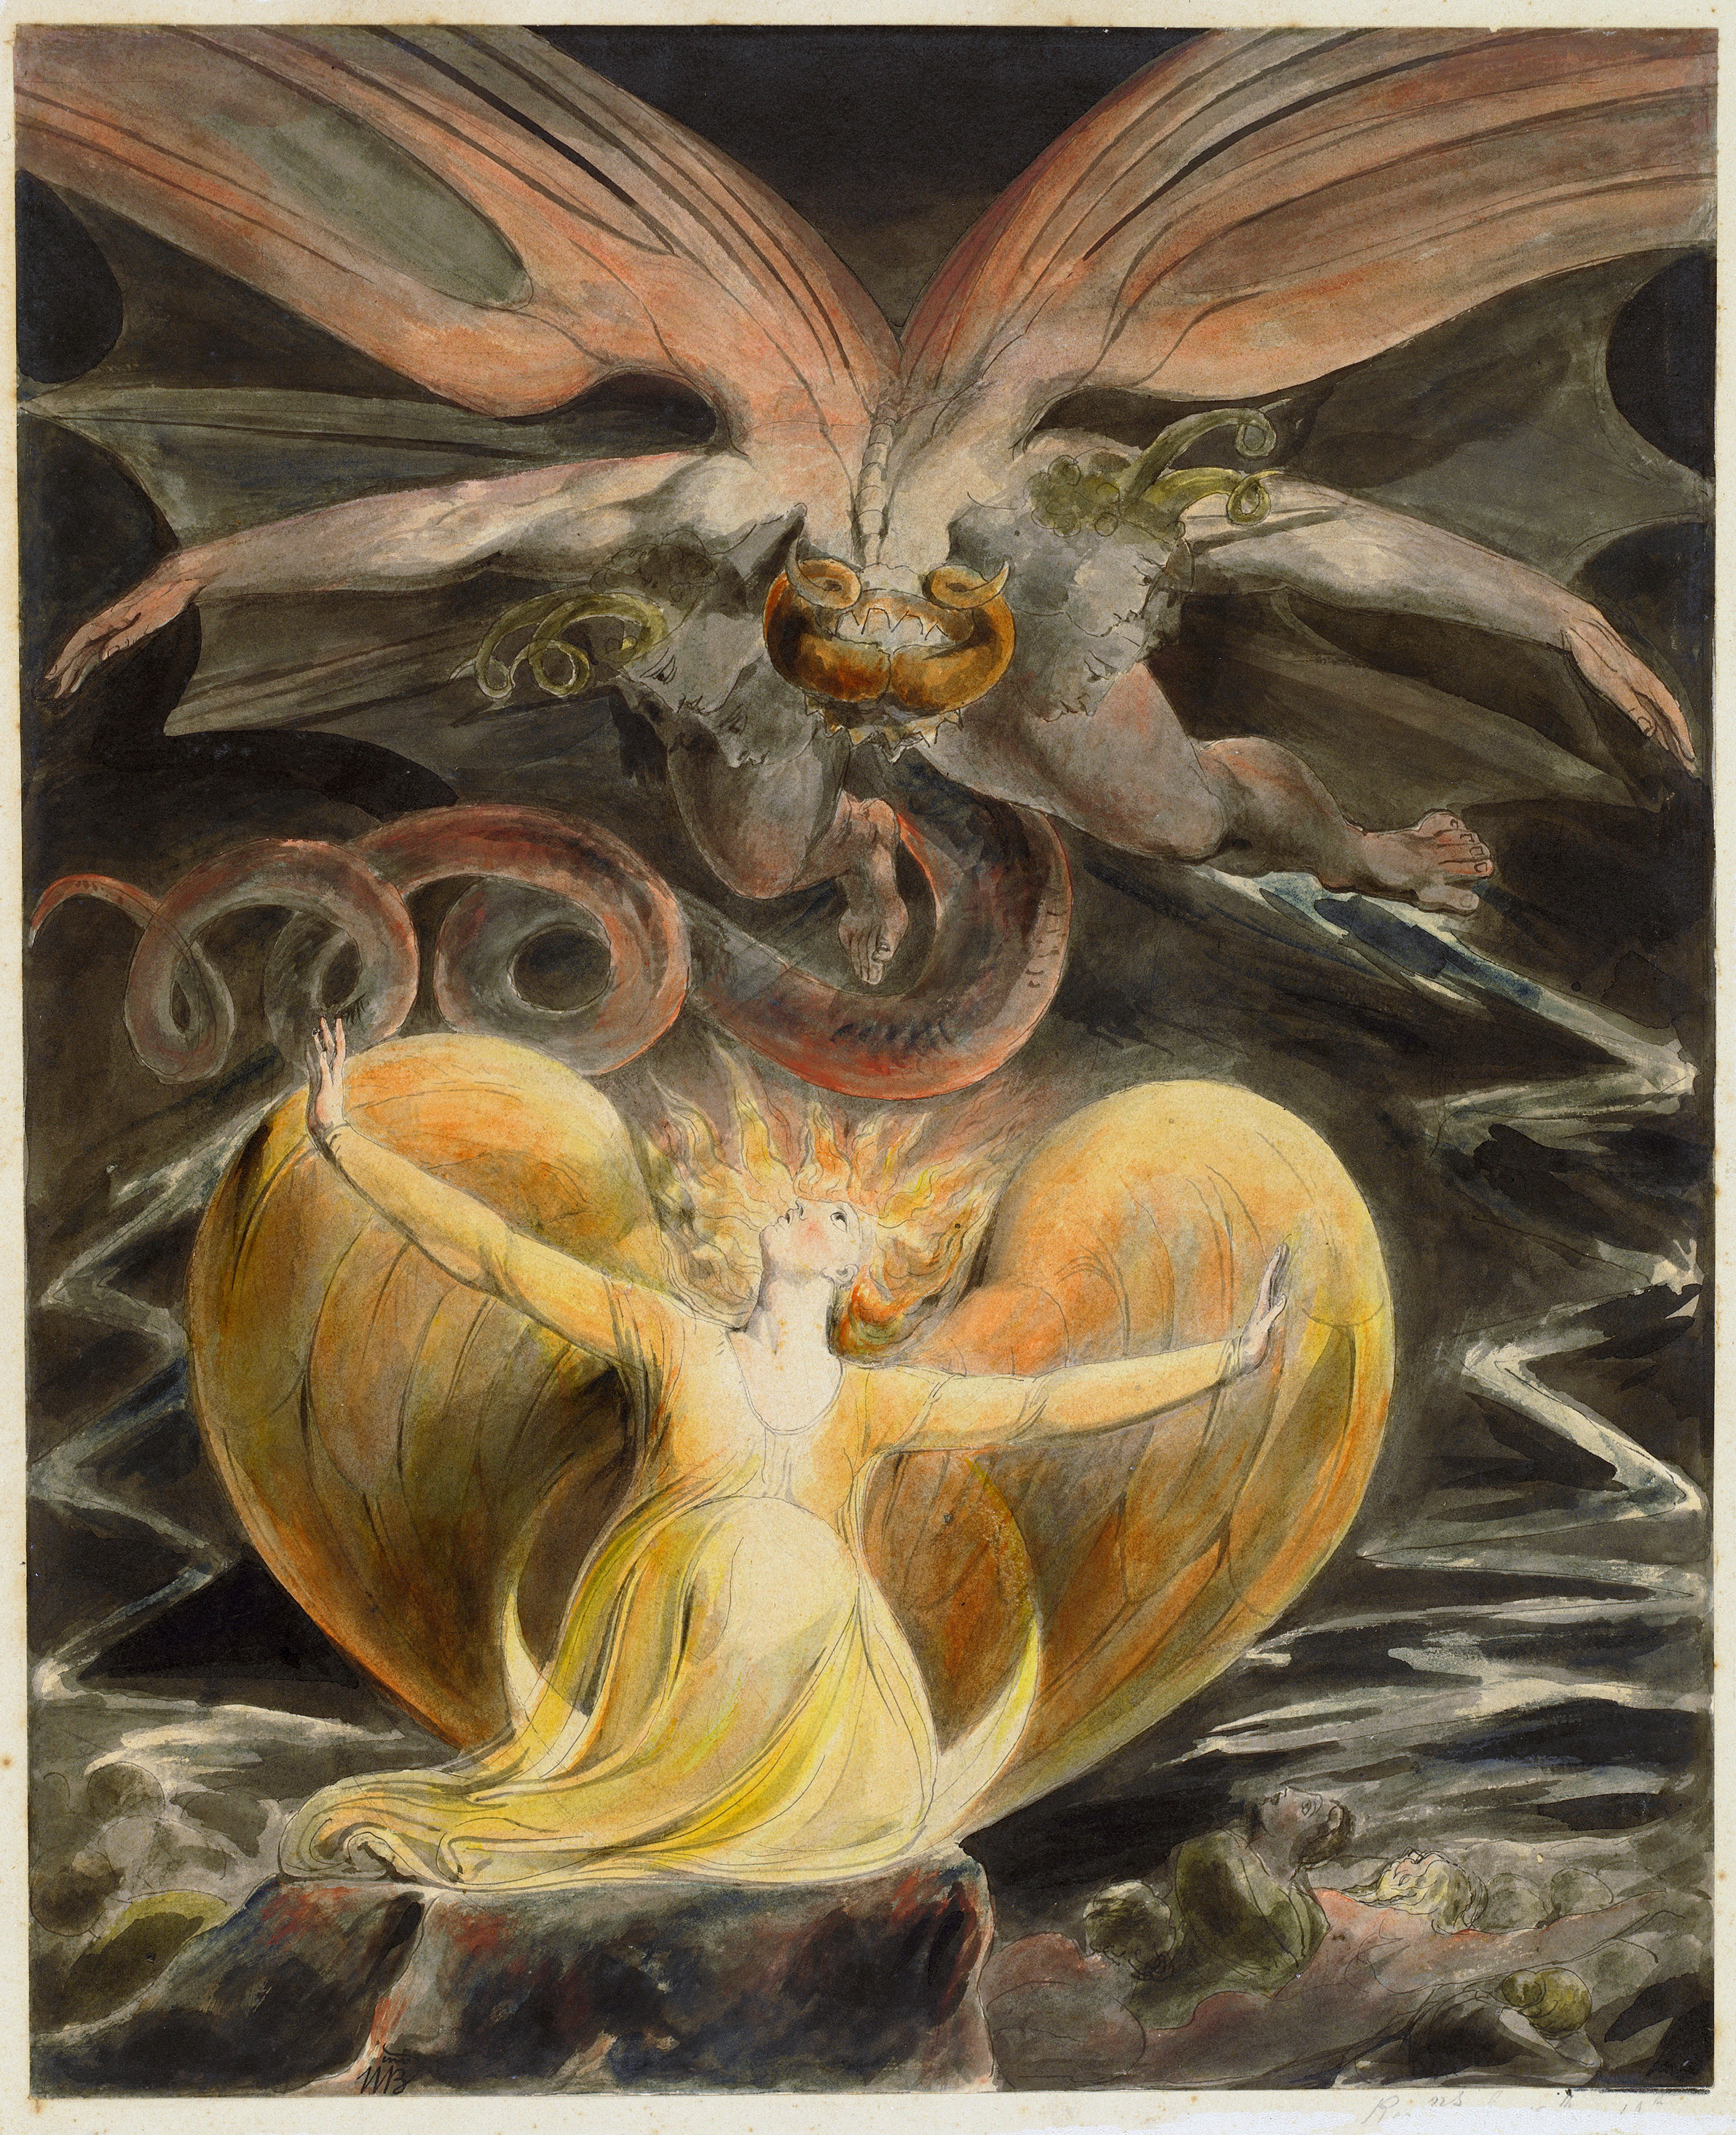 伟大的红龙与日光蔽体的女人 by 威廉 布莱克 - 1805 - 40.8 x 33.7 cm 